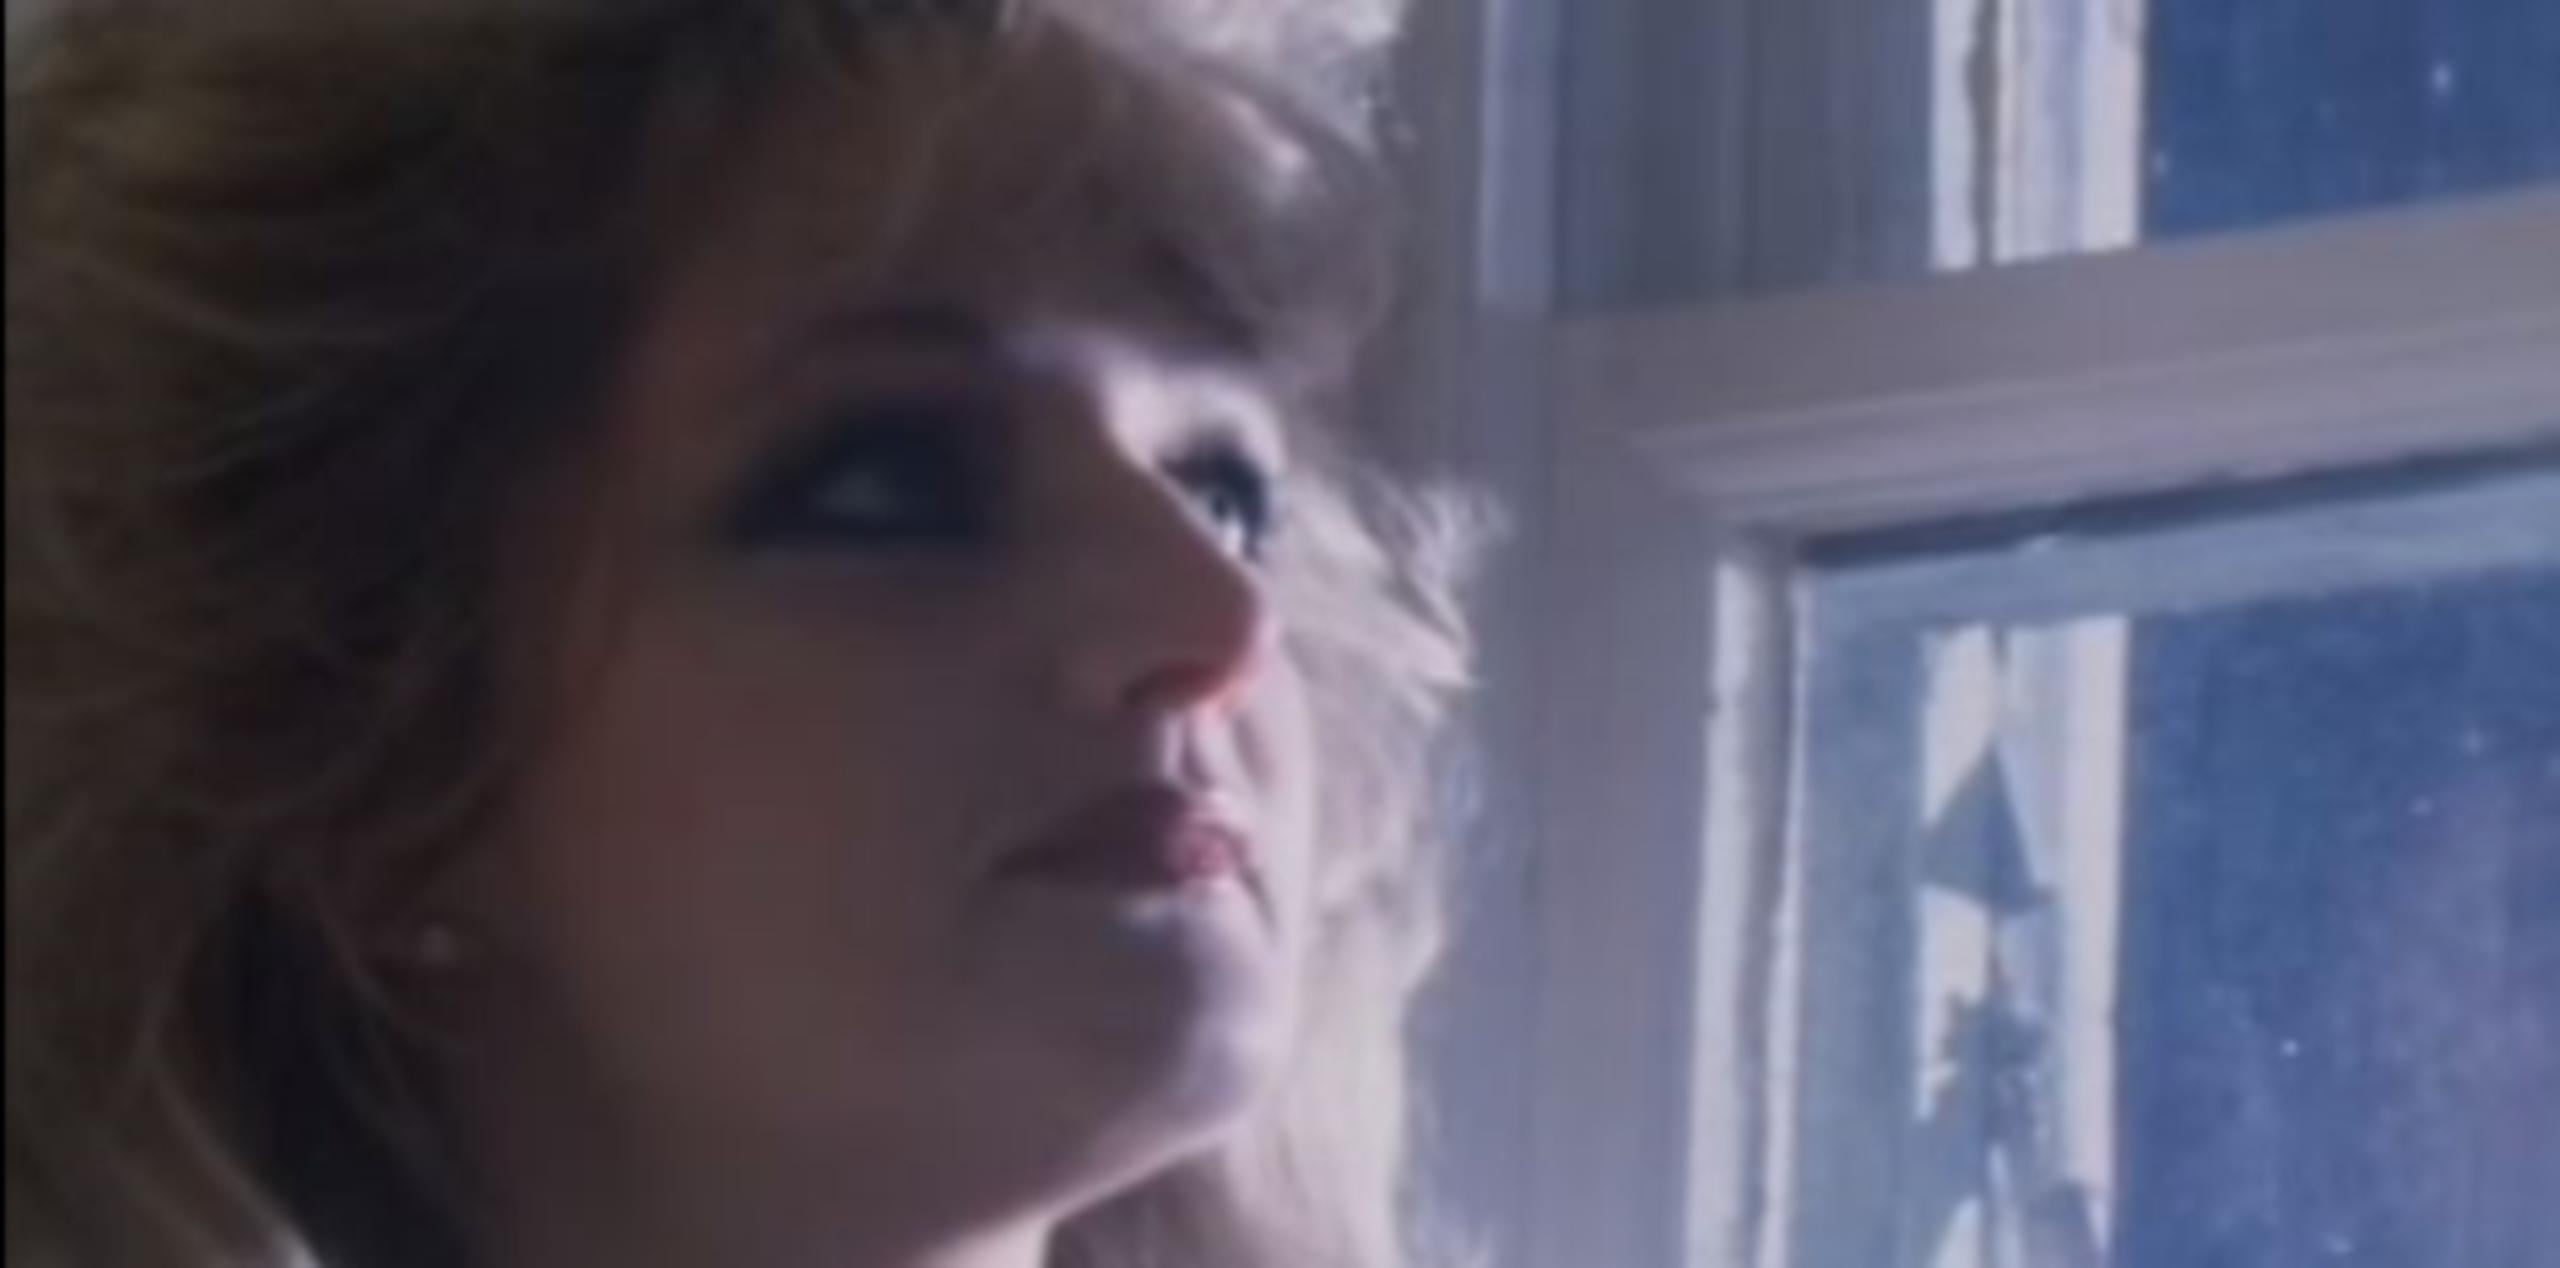 El tema “Total Eclipse of the Heart” fue lanzado en el 1983 por Taylor y se convirtió en un éxito mundial. (Captura)